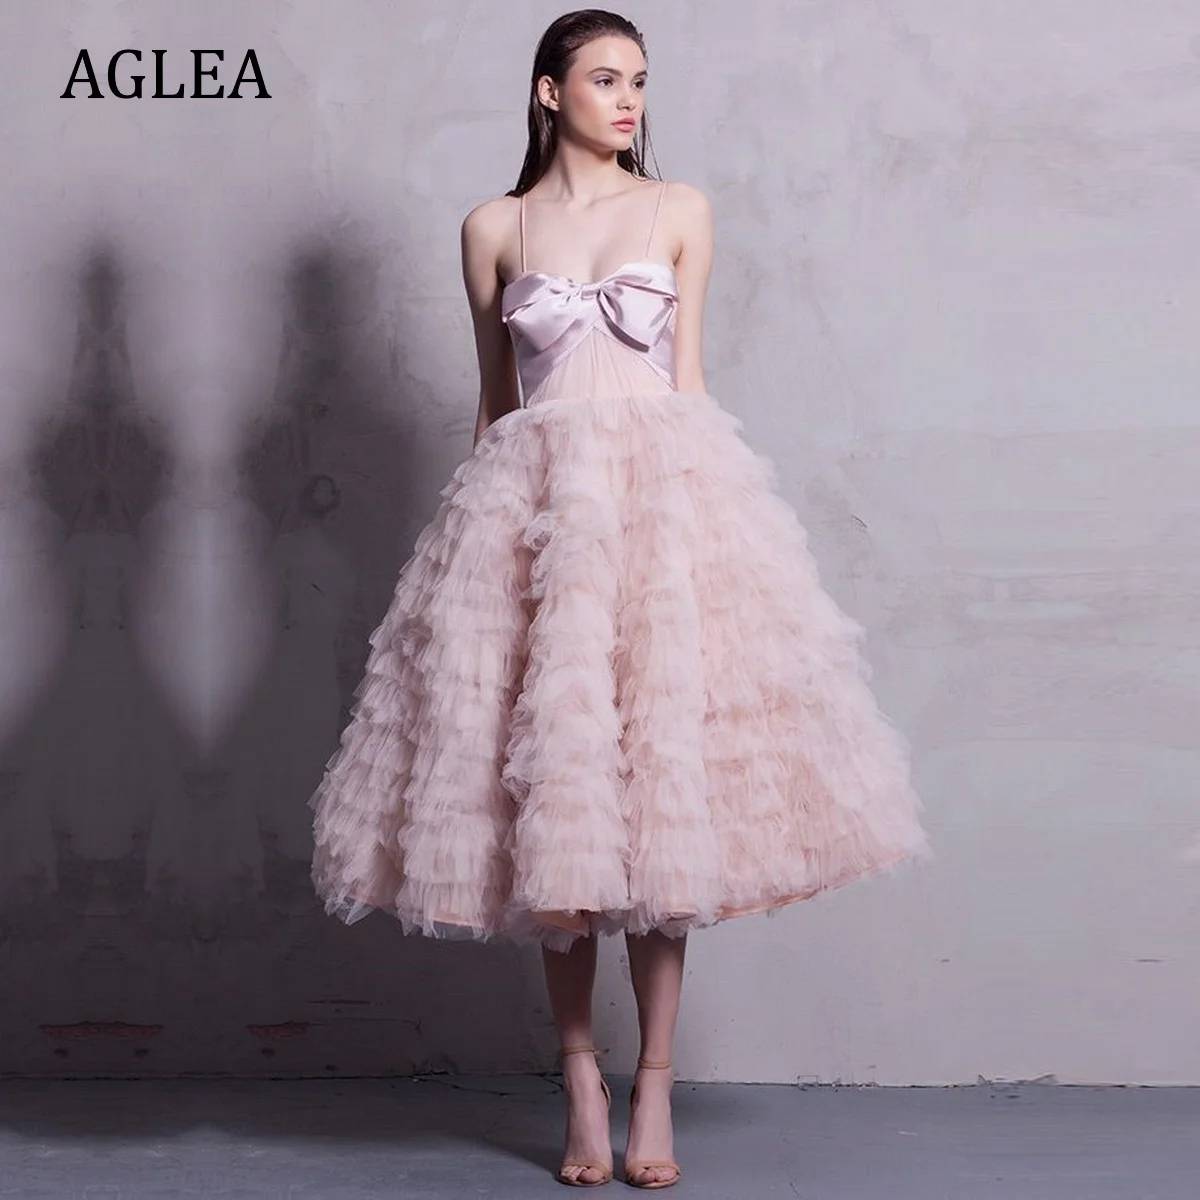 

Женское вечернее платье AGLEA, элегантное строгое платье с драпировкой, трапециевидной формы, до колена, со складками-спагетти, для выпускного вечера